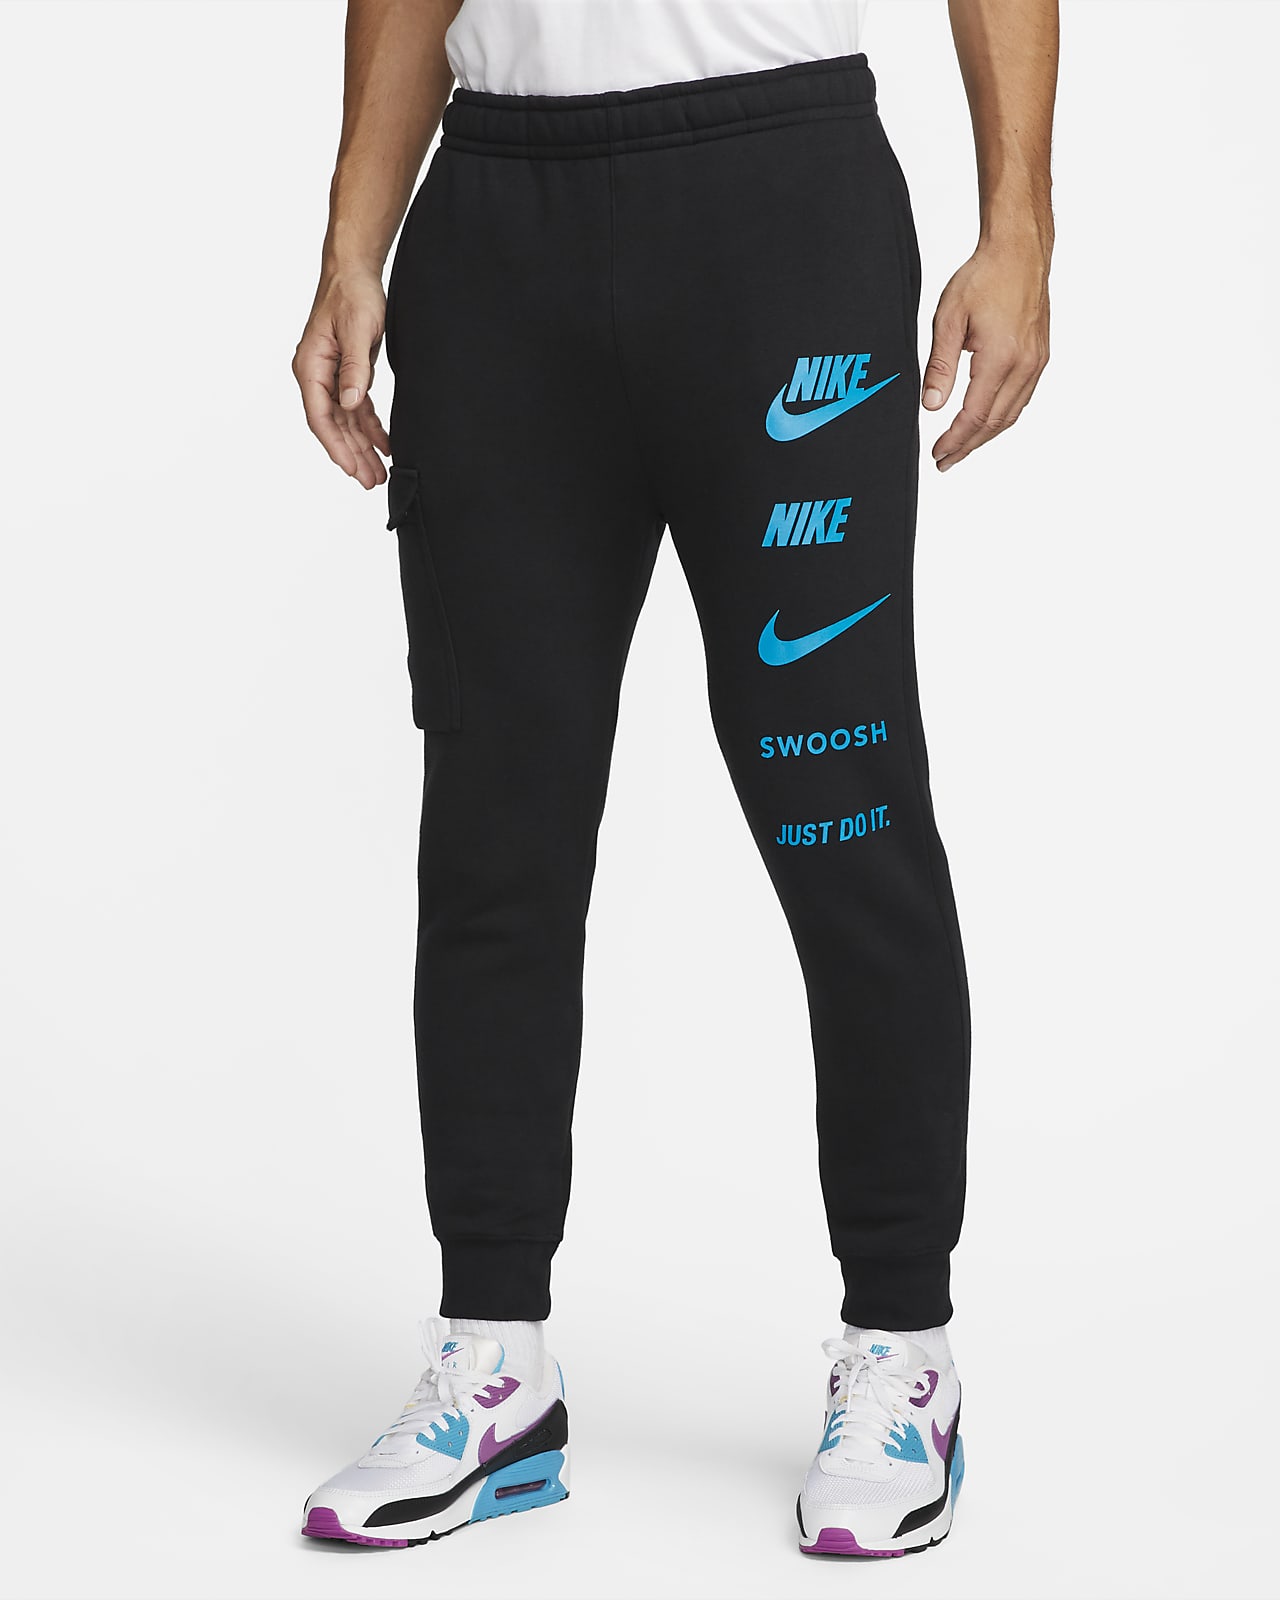 Nike Sportswear Standard Issue Men's Cargo Trousers.